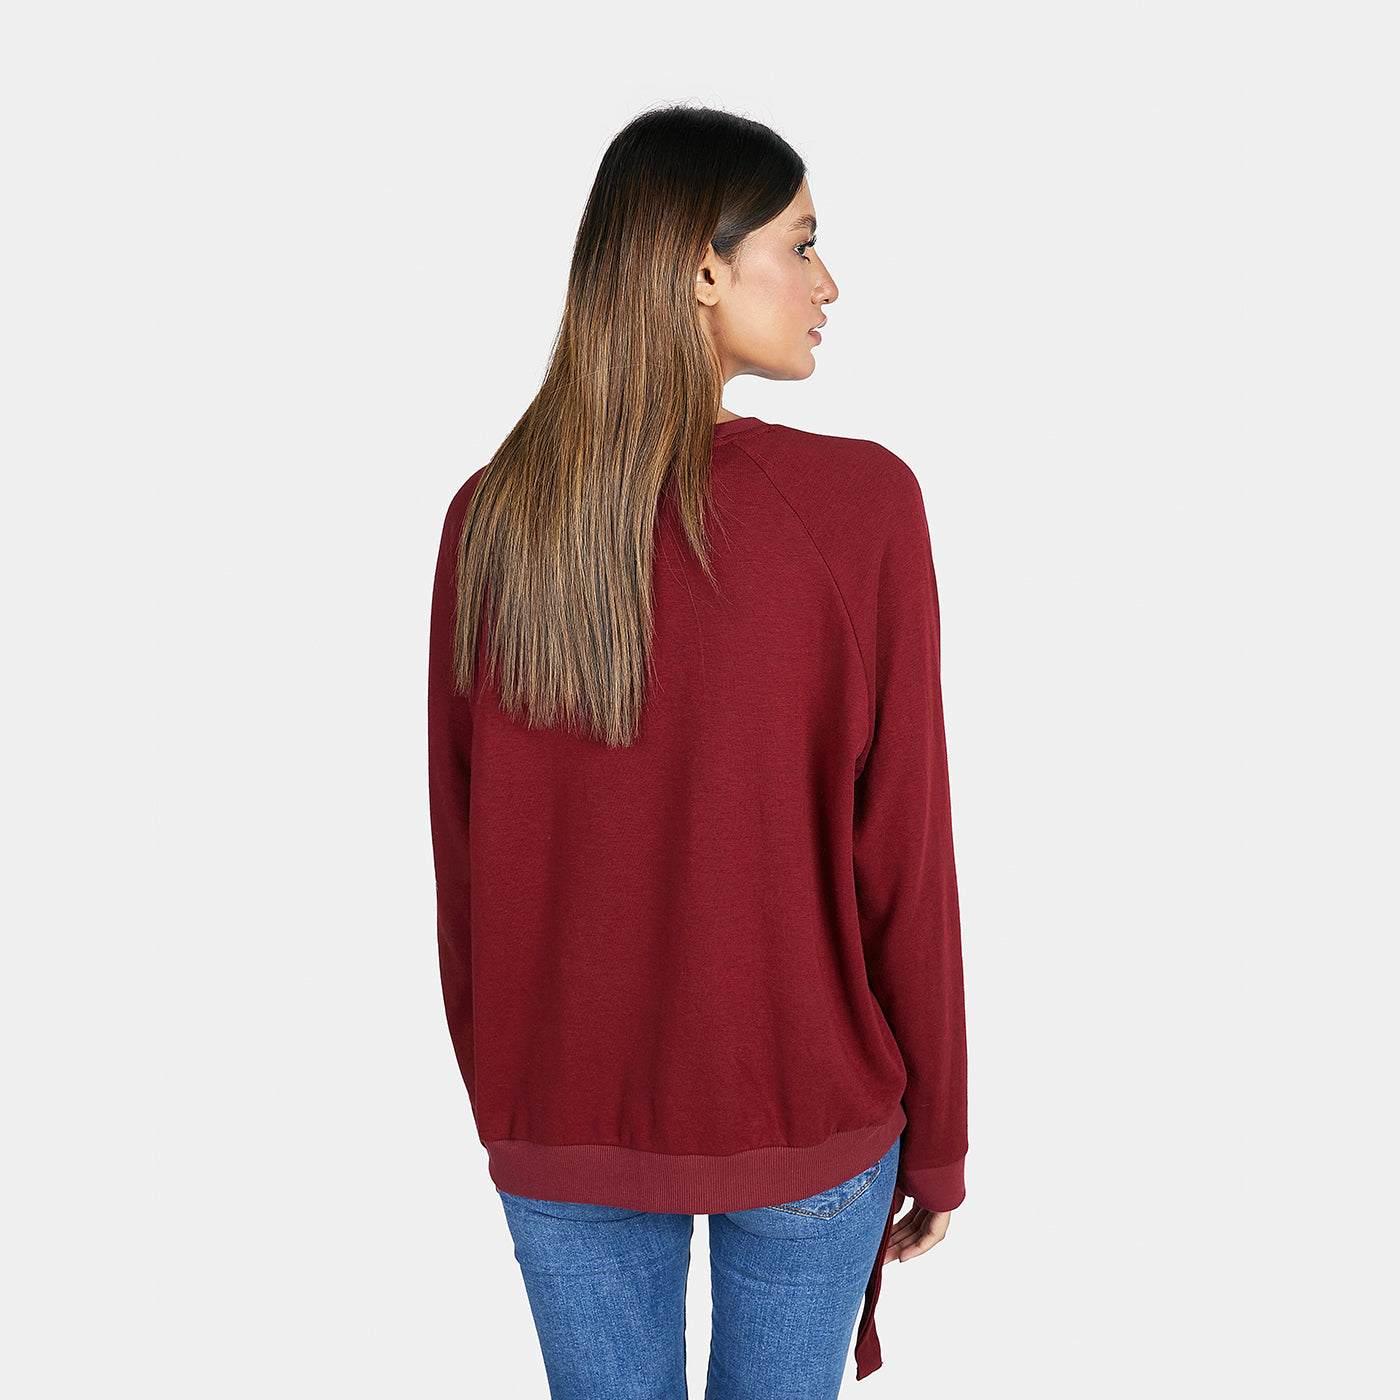 Women's Crew-neck Sweatshirt